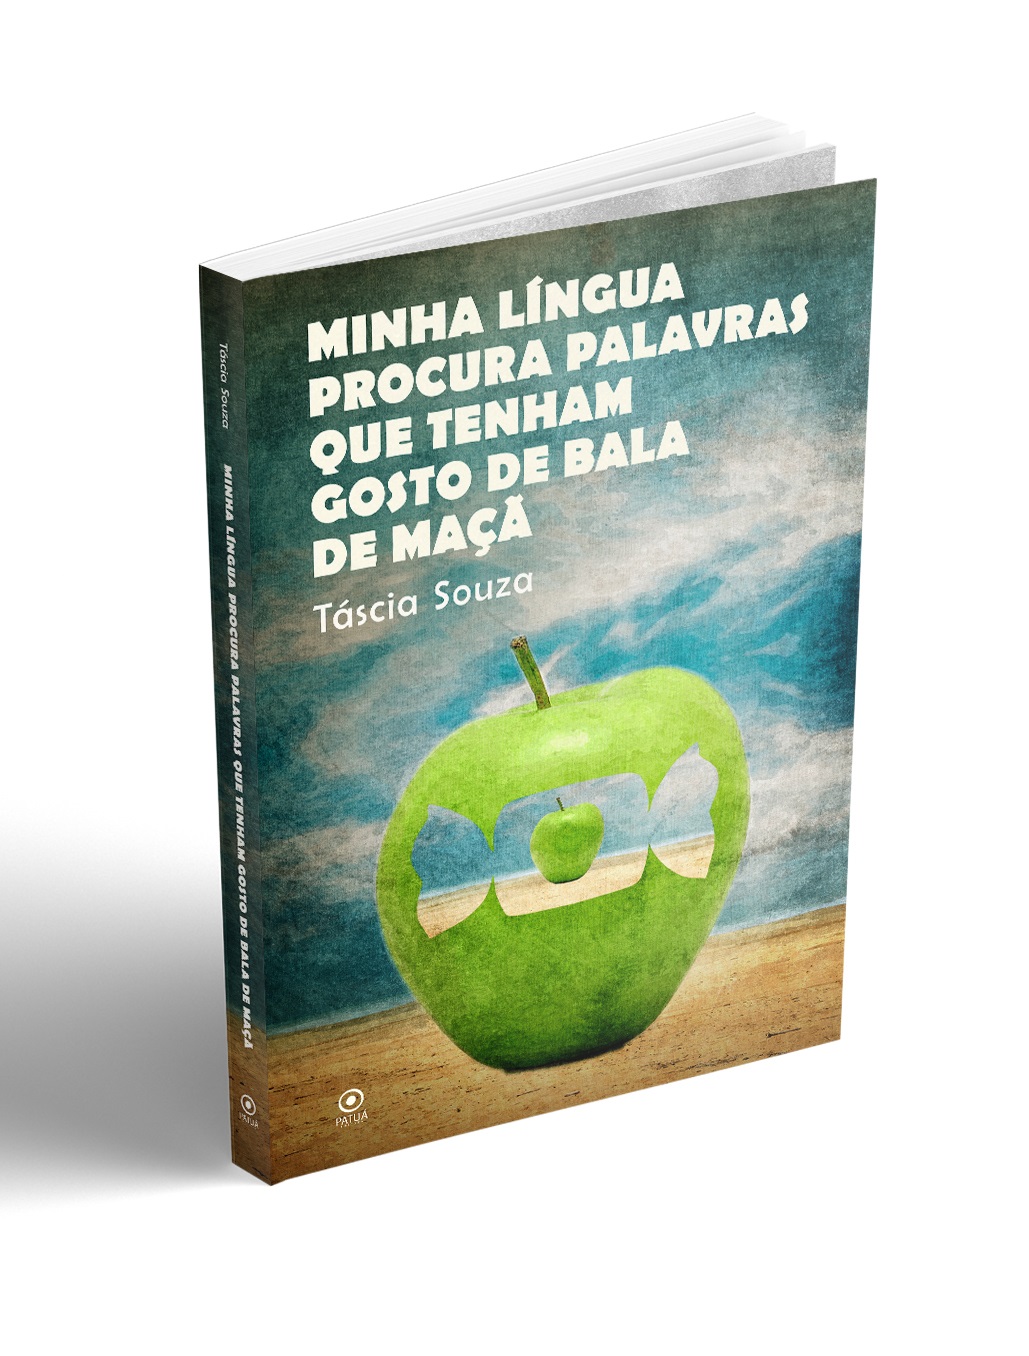 Forum da Cultura sedia lançamento de livro de poemas de Táscia Souza